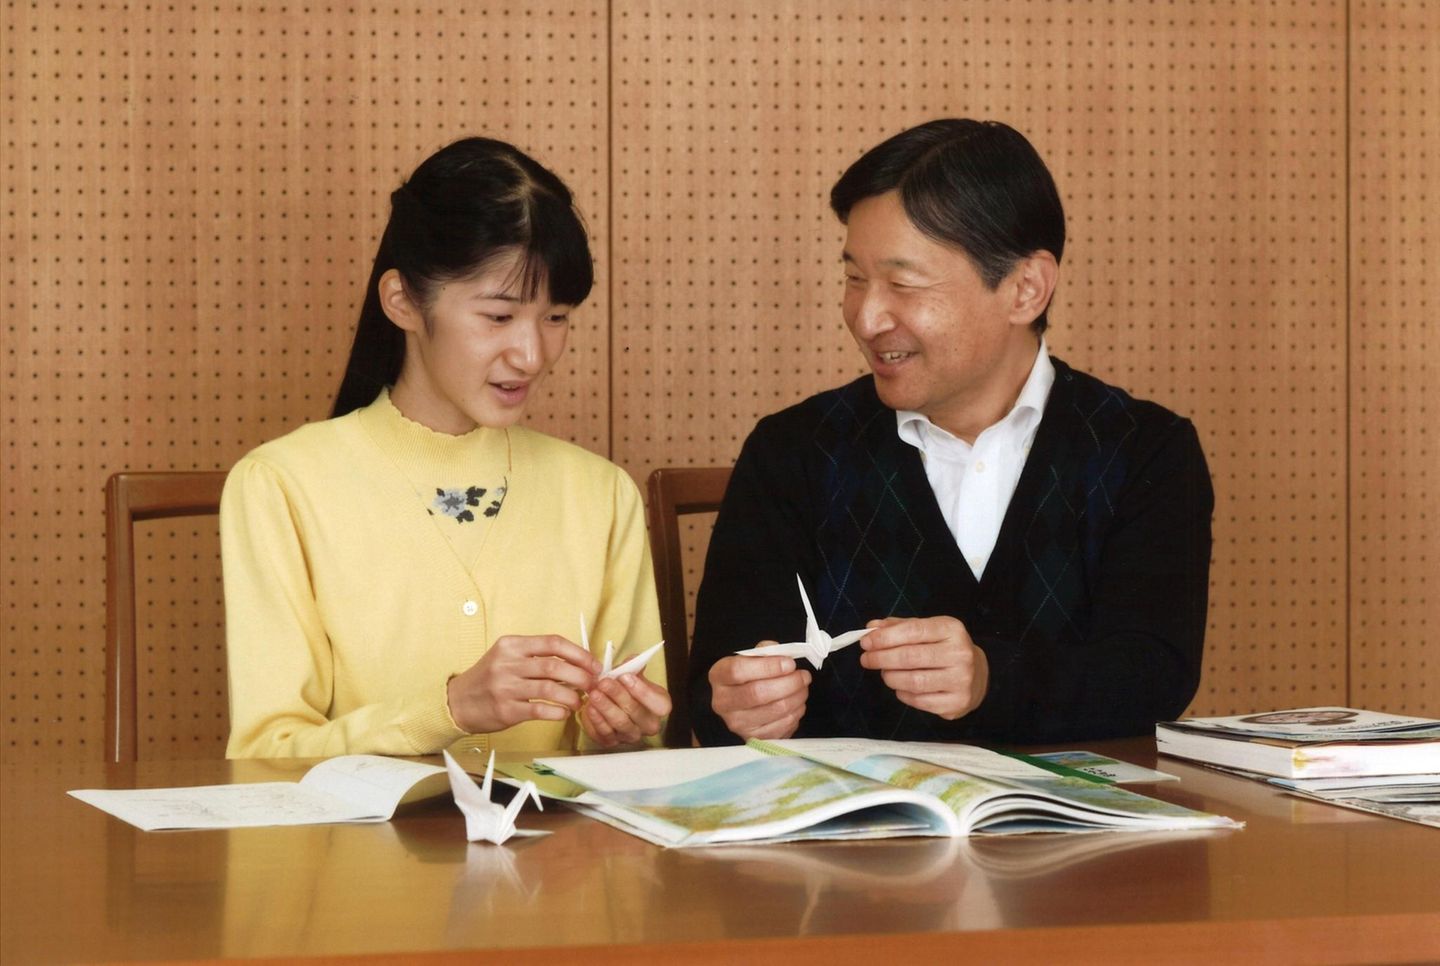 1. Dezember 2016  Ein zweites Geburtstagbild, das ebenfalls Ende November aufgenommen wurde, zeigt die Prinzessin mit ihrem Vater, Kronprinz Naruhito.